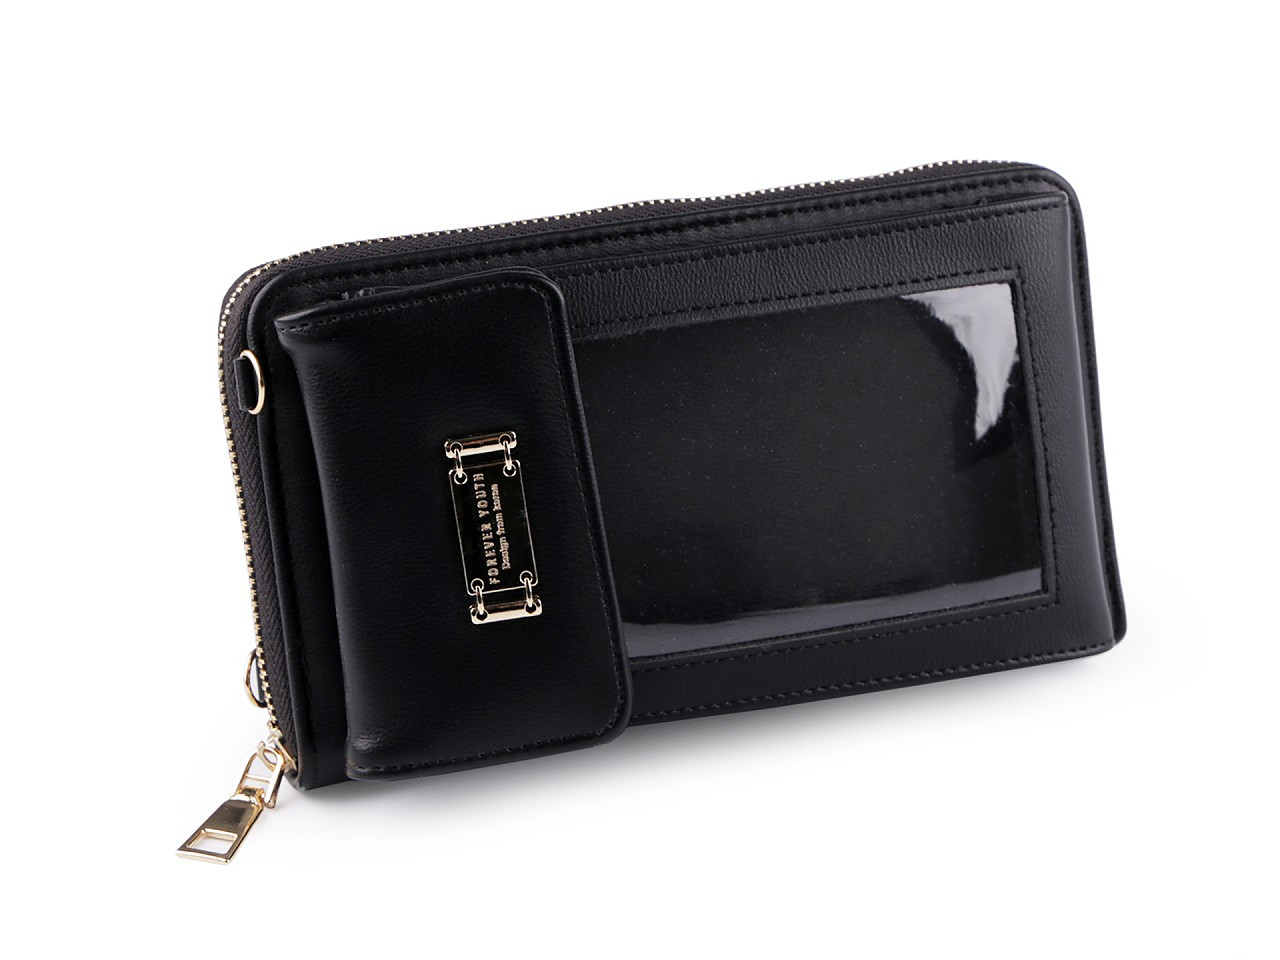 Peněženka s pouzdrem na mobil 11x19 cm, barva 4 černá